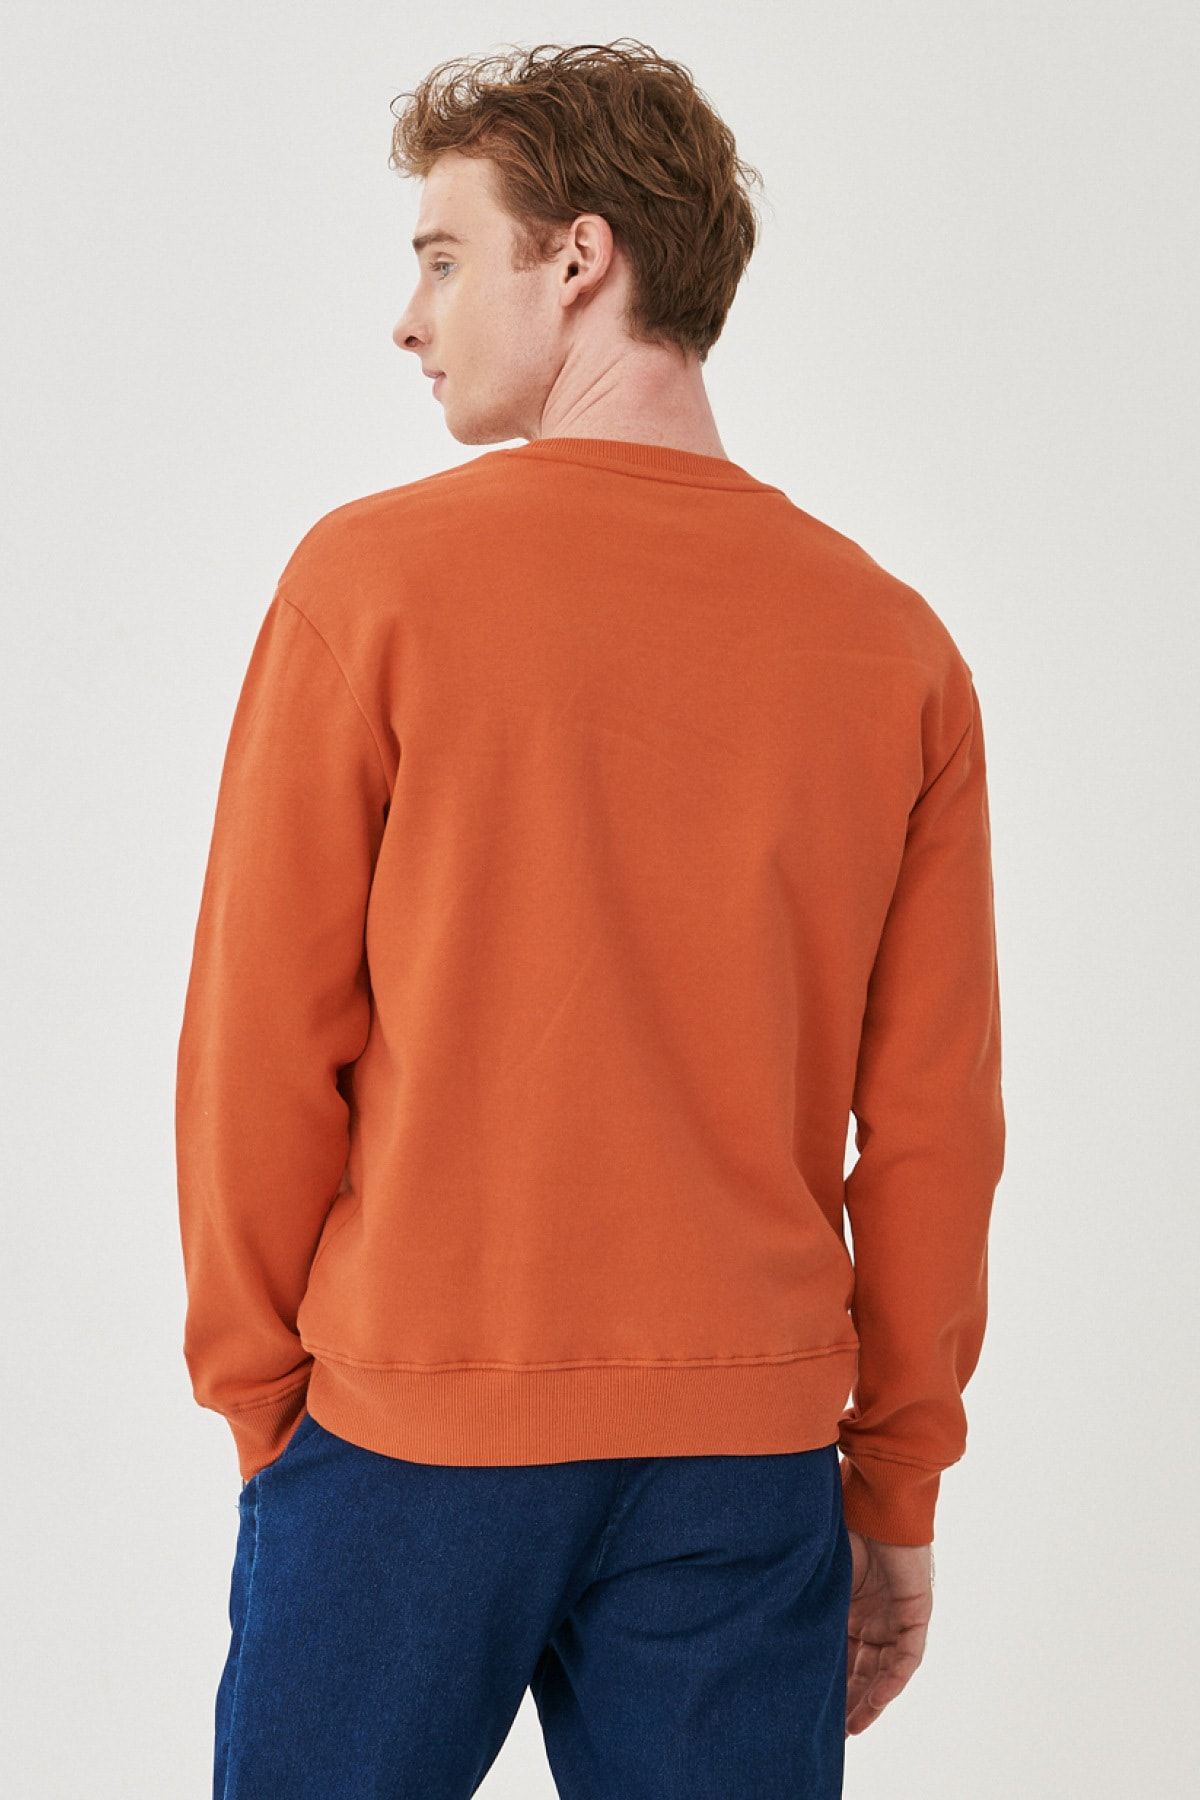 Lee Regular Fit Normal Cut 100% Cotton Crew Neck Sweatshirt - Trendyol